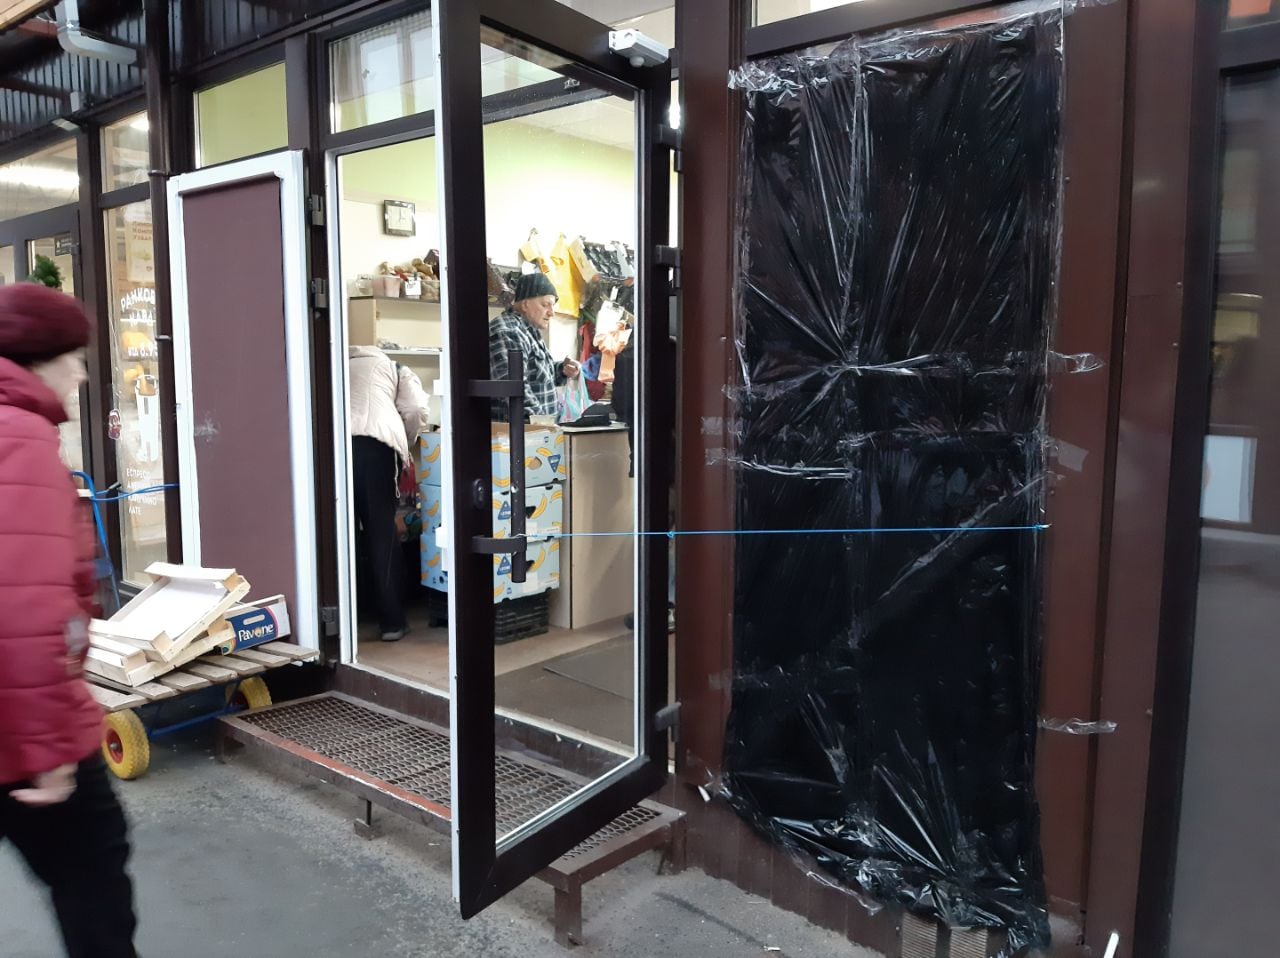 Погром на рынке в Киеве: в сети появилось видео и версии нападения, фото — Фейсбук К.Андриюка